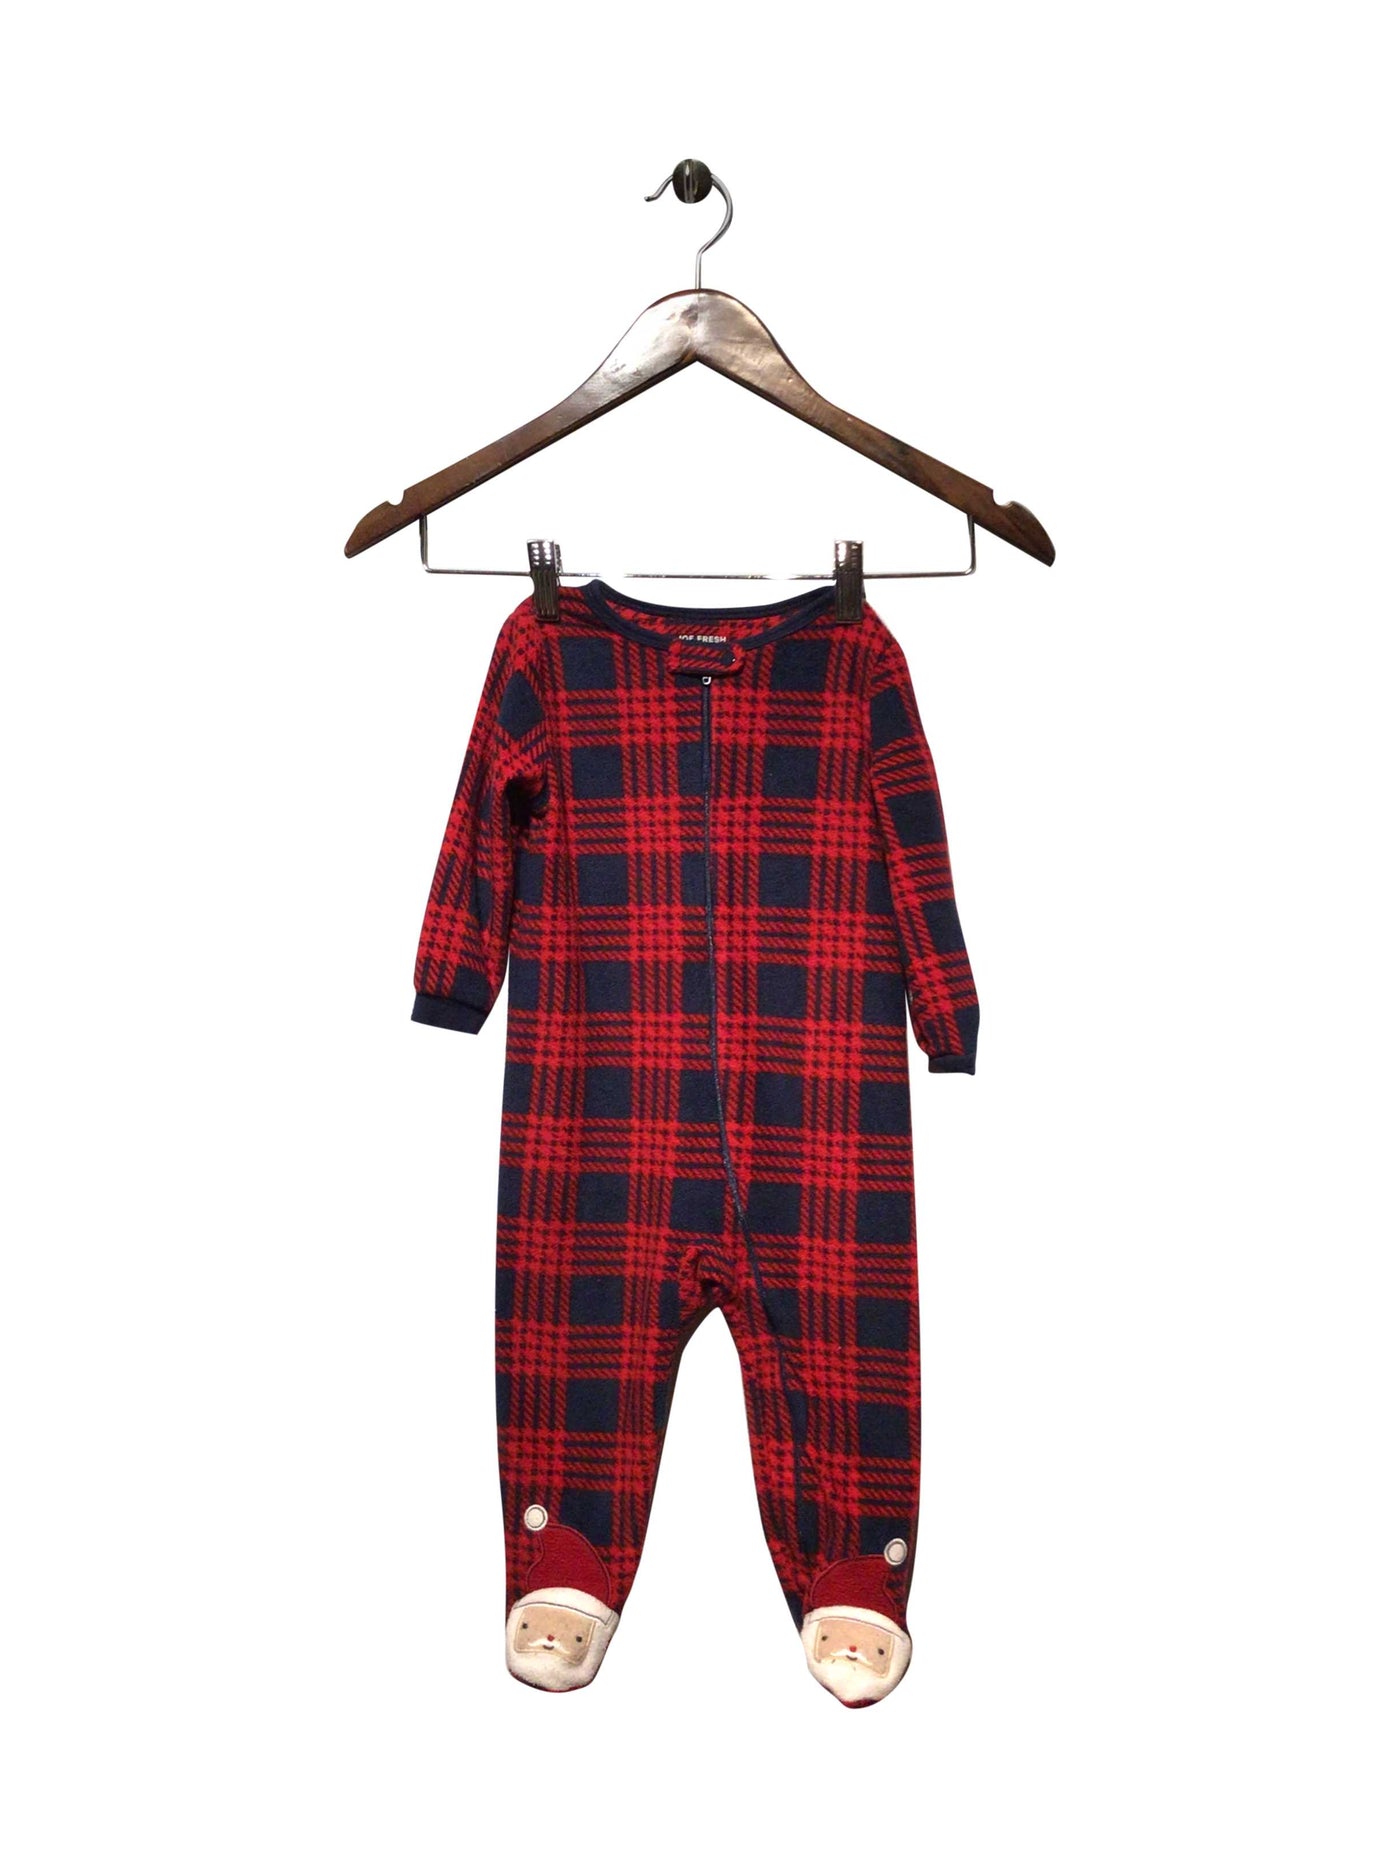 JOE FRESH Regular fit Pajamas in Red  -  12-18M  4.99 Koop